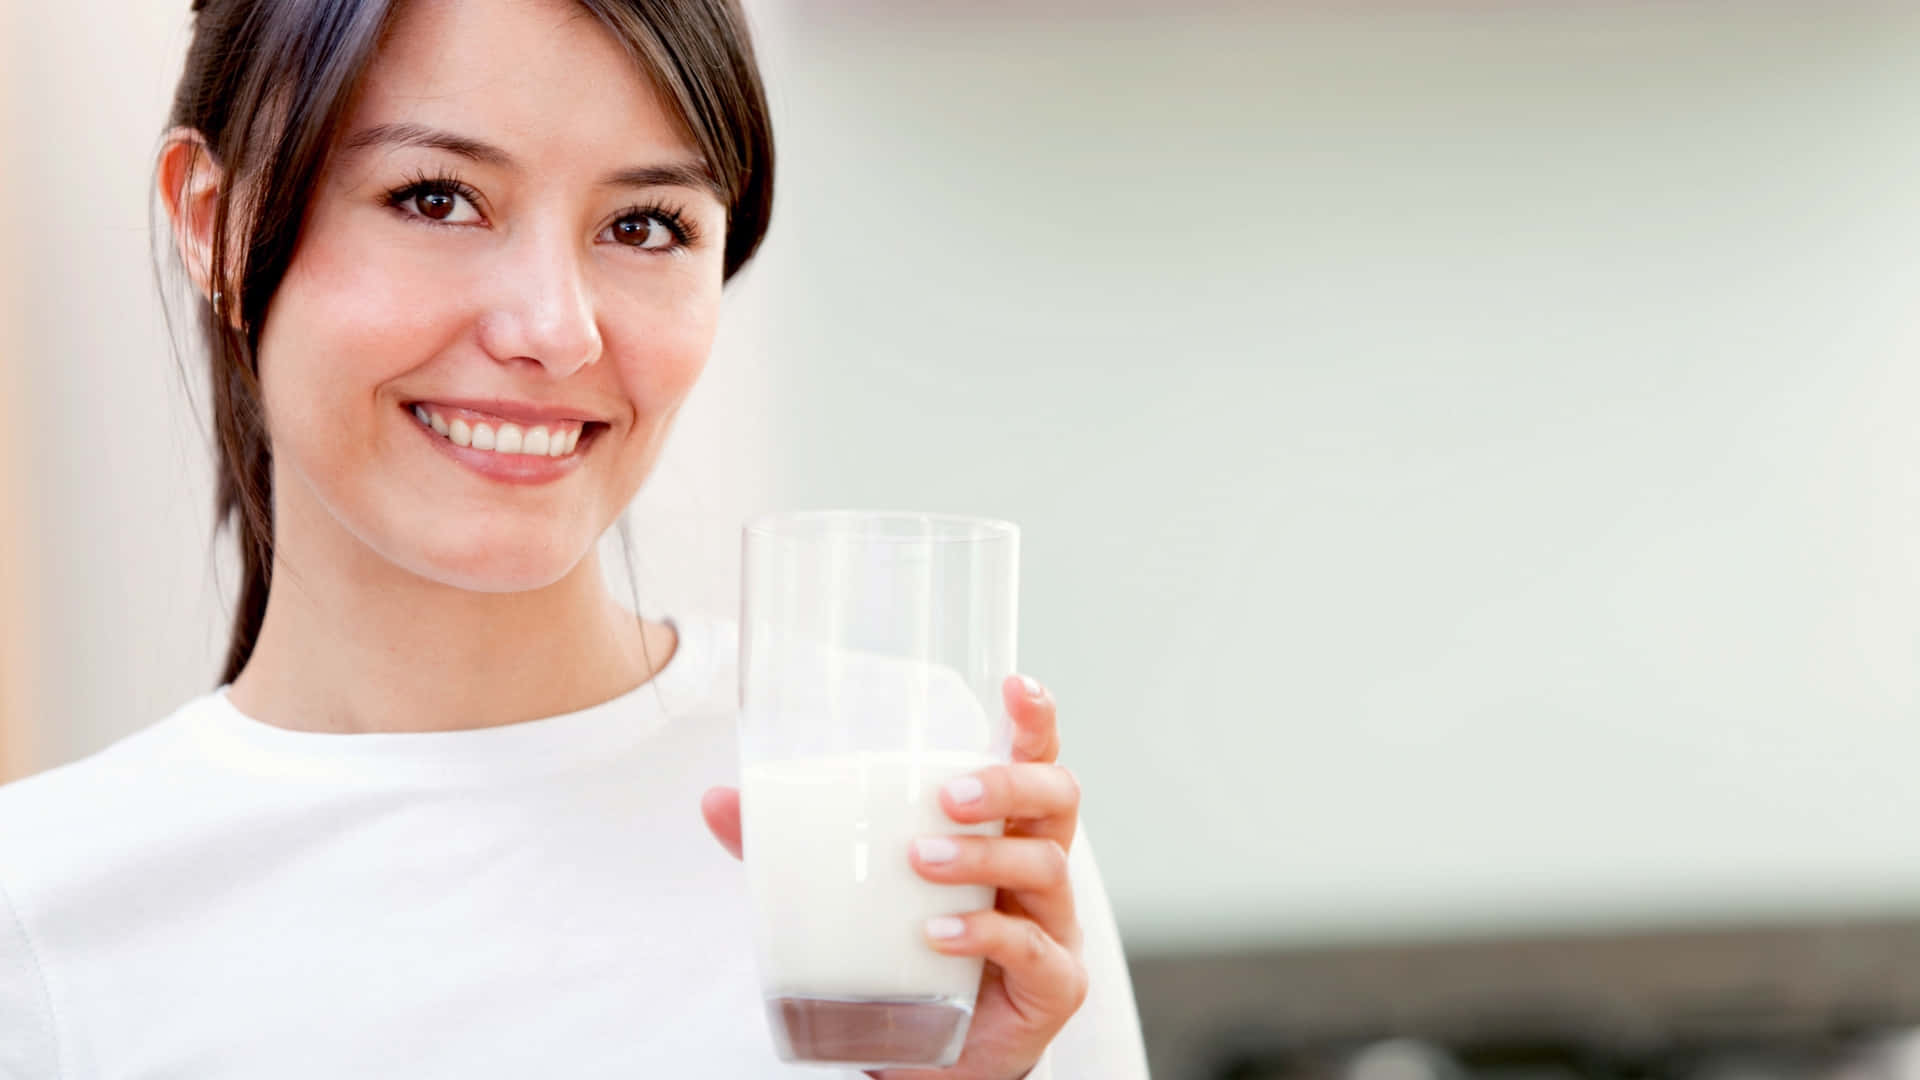 Enkvinna Som Håller I Ett Glas Mjölk